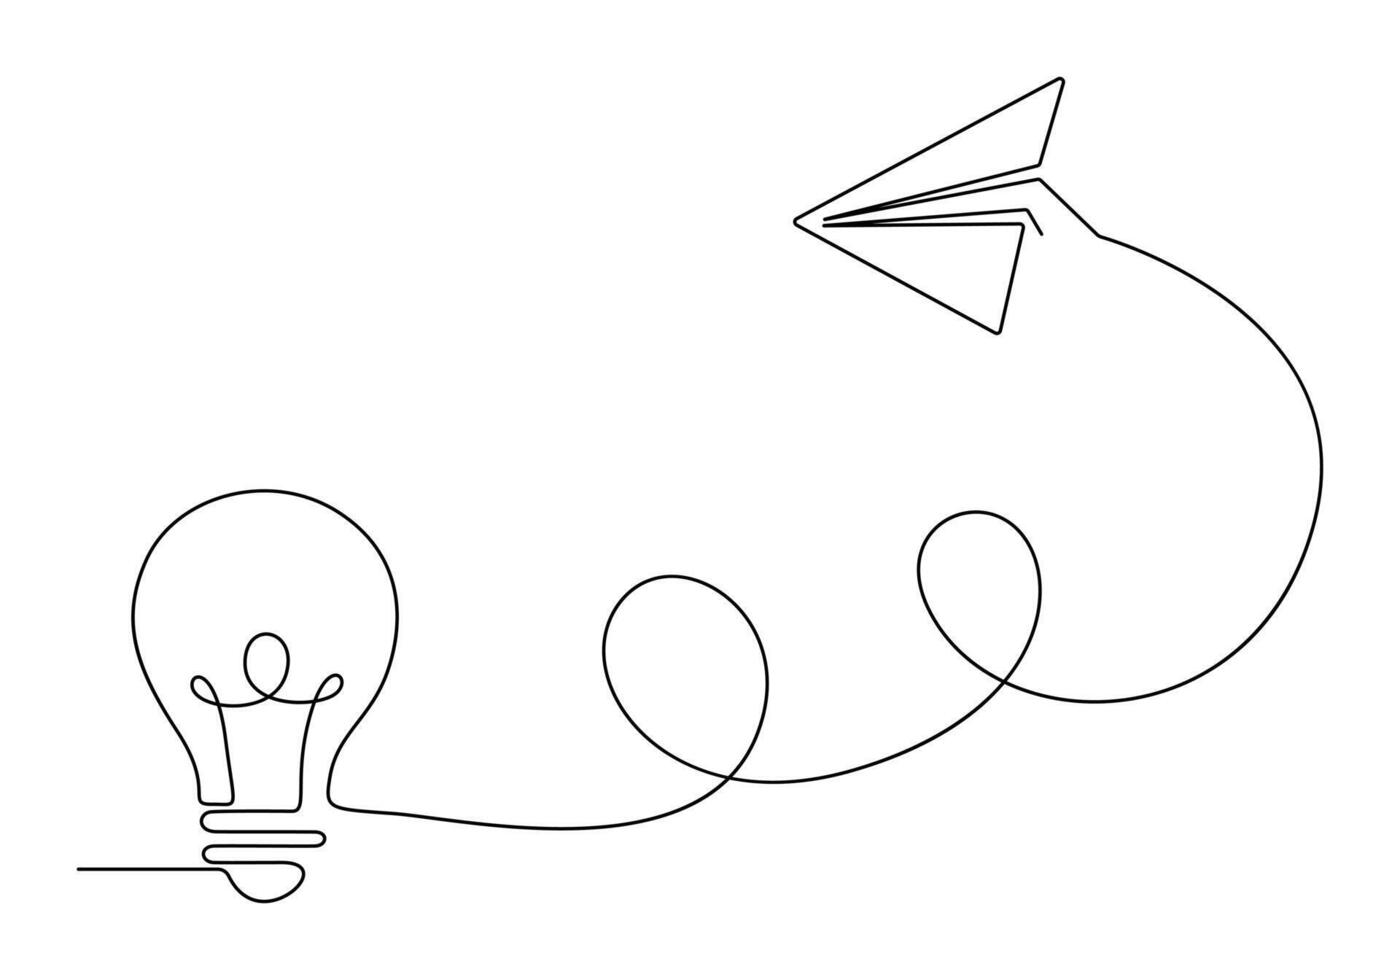 Facile lumière ampoule et avion continu un ligne dessin vecteur illustration